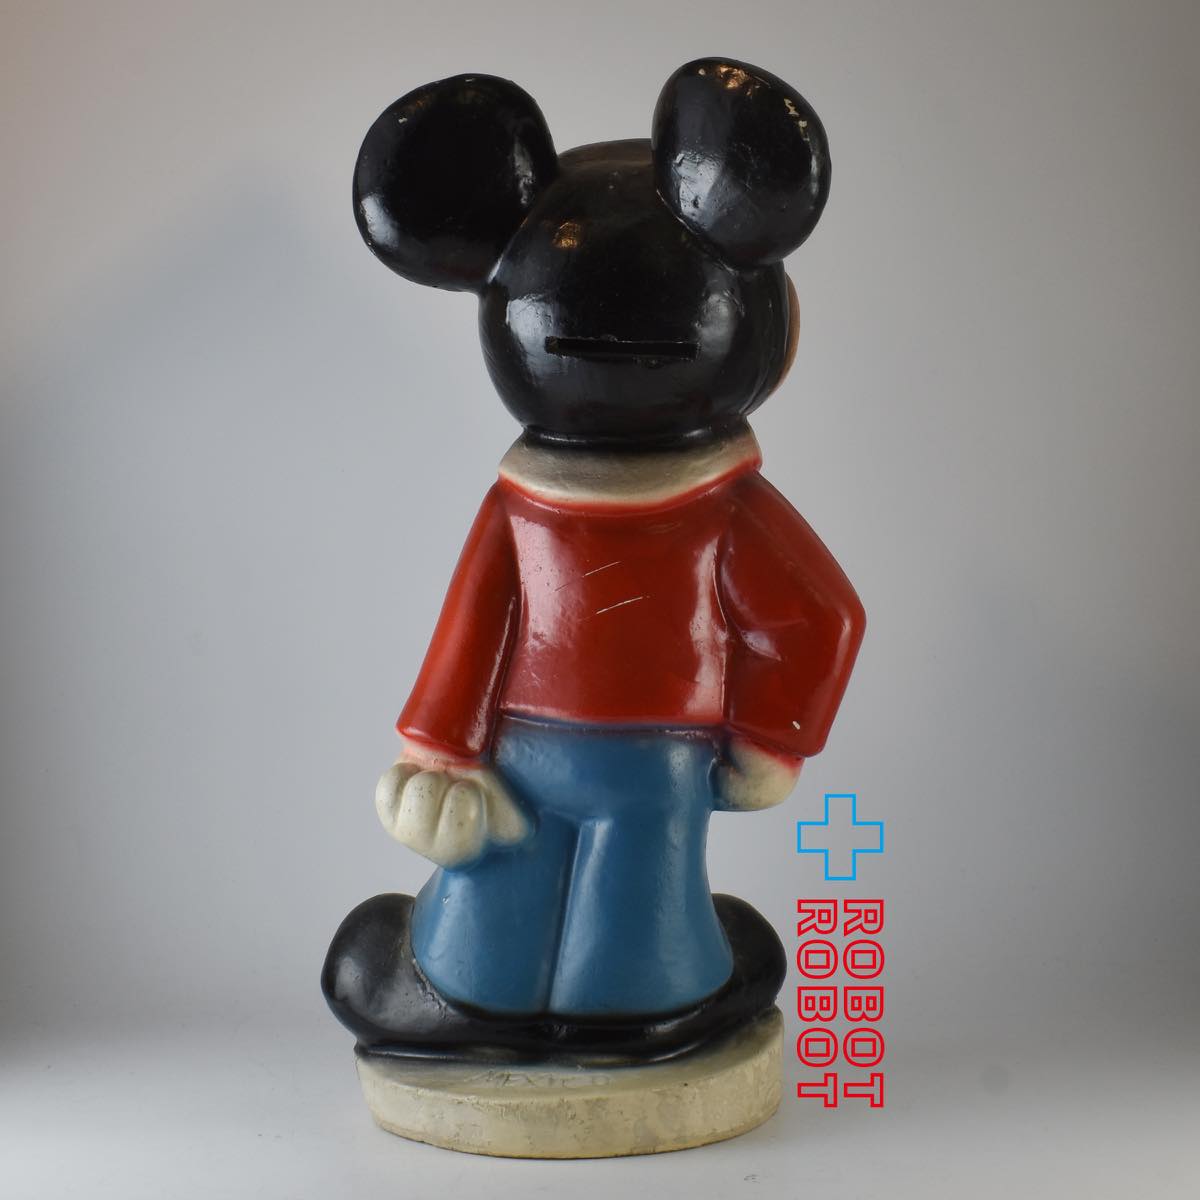 ディズニー ミッキーマウス 陶器製 セラミック バンク メキシコ